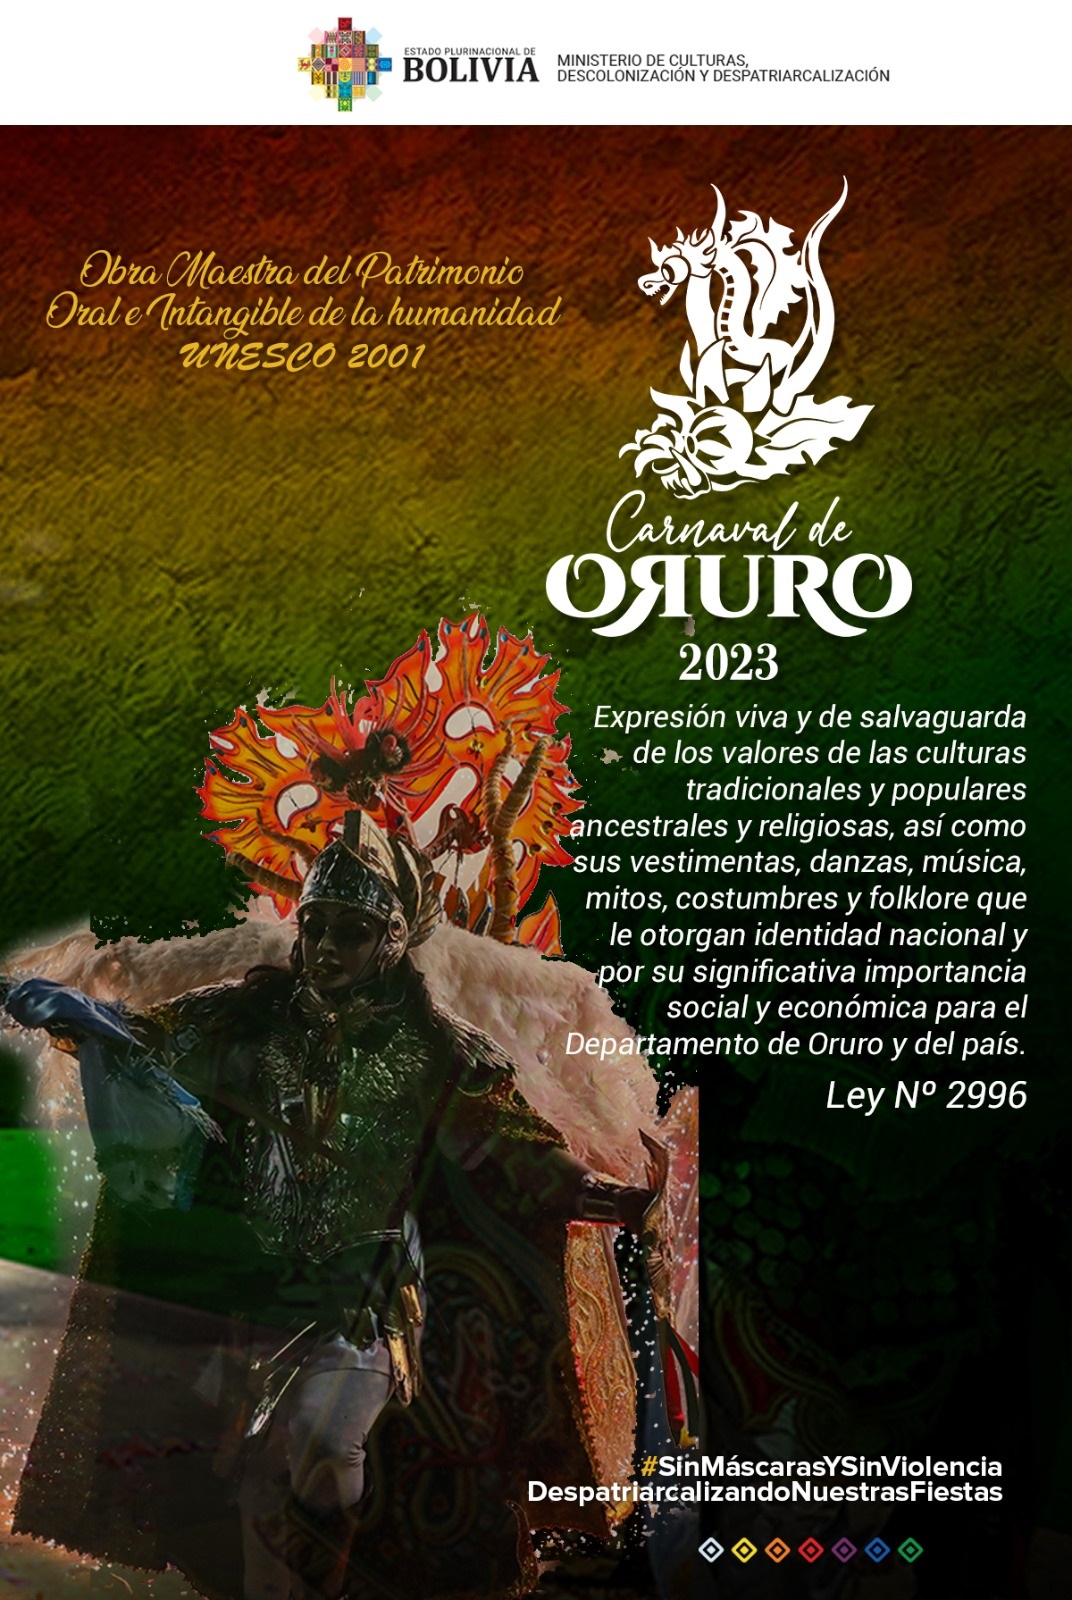 Carnaval de Oruro 2023 - 